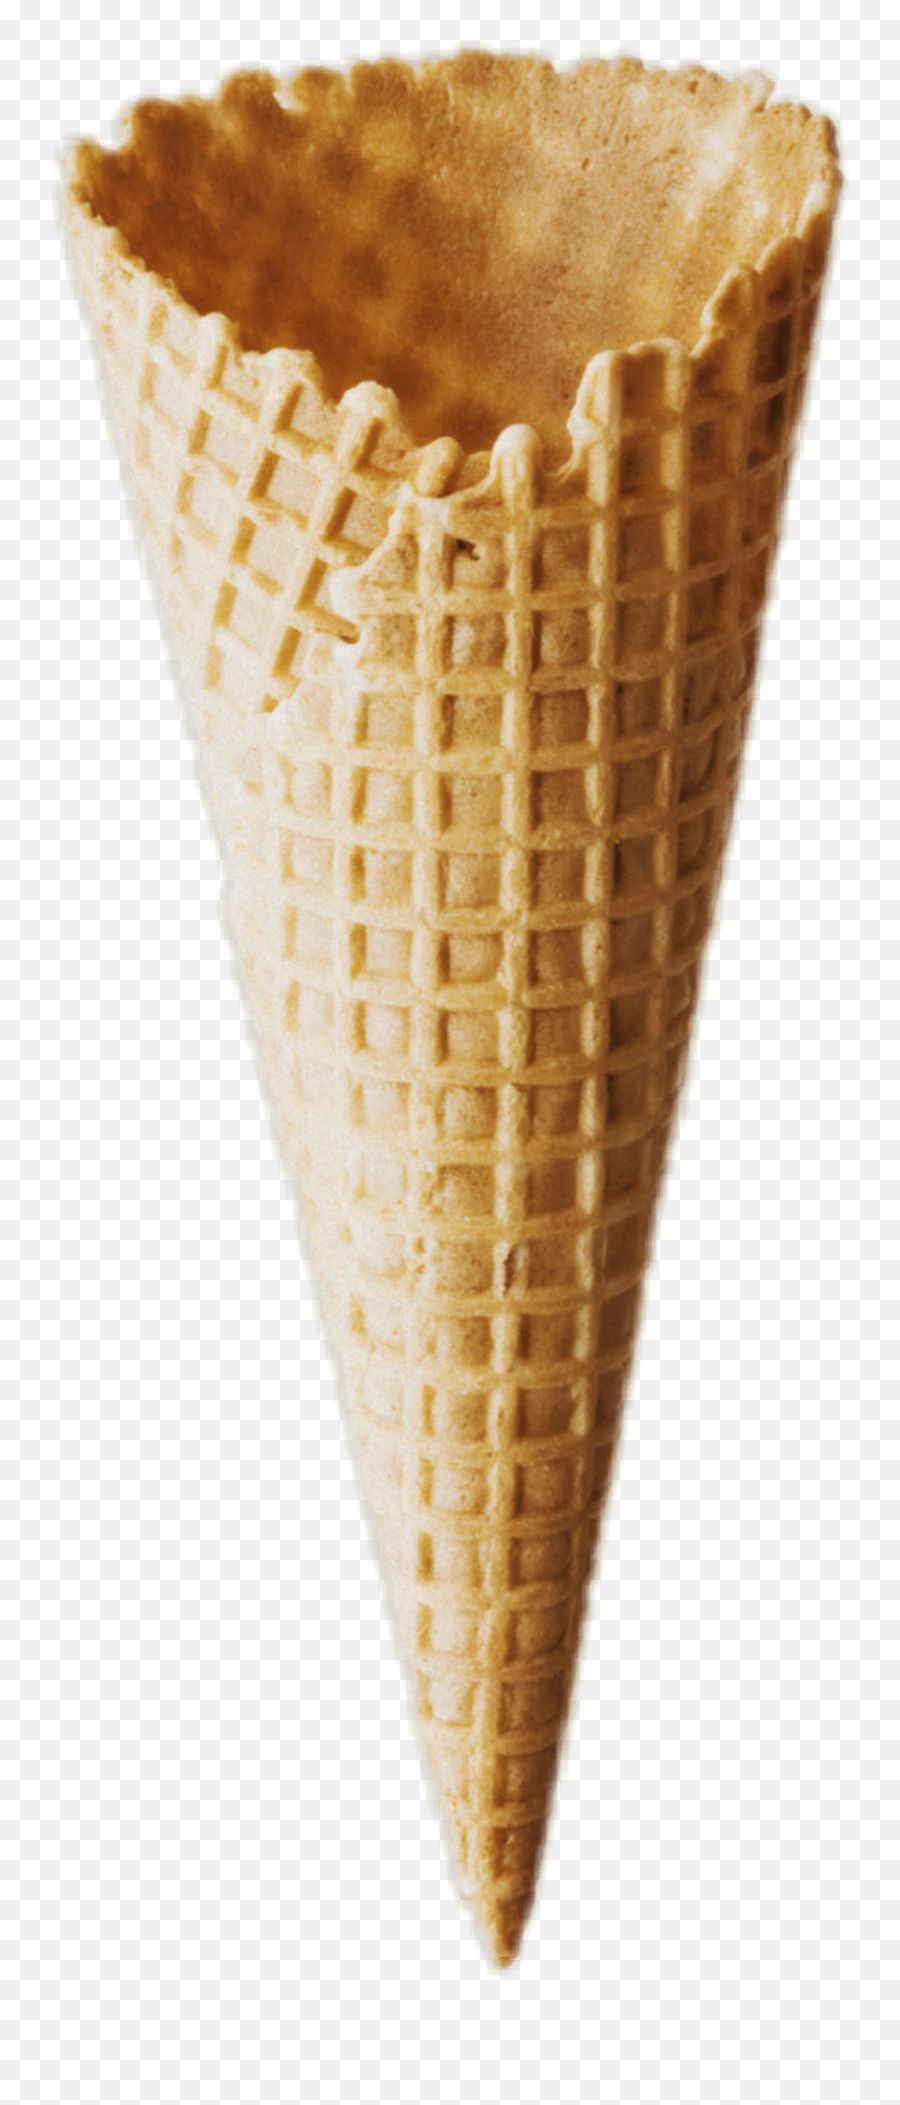 Come Cone Icecream Corn Ice Cream - Ice Cream Cone Emoji,Ice Cream Cone Emoji